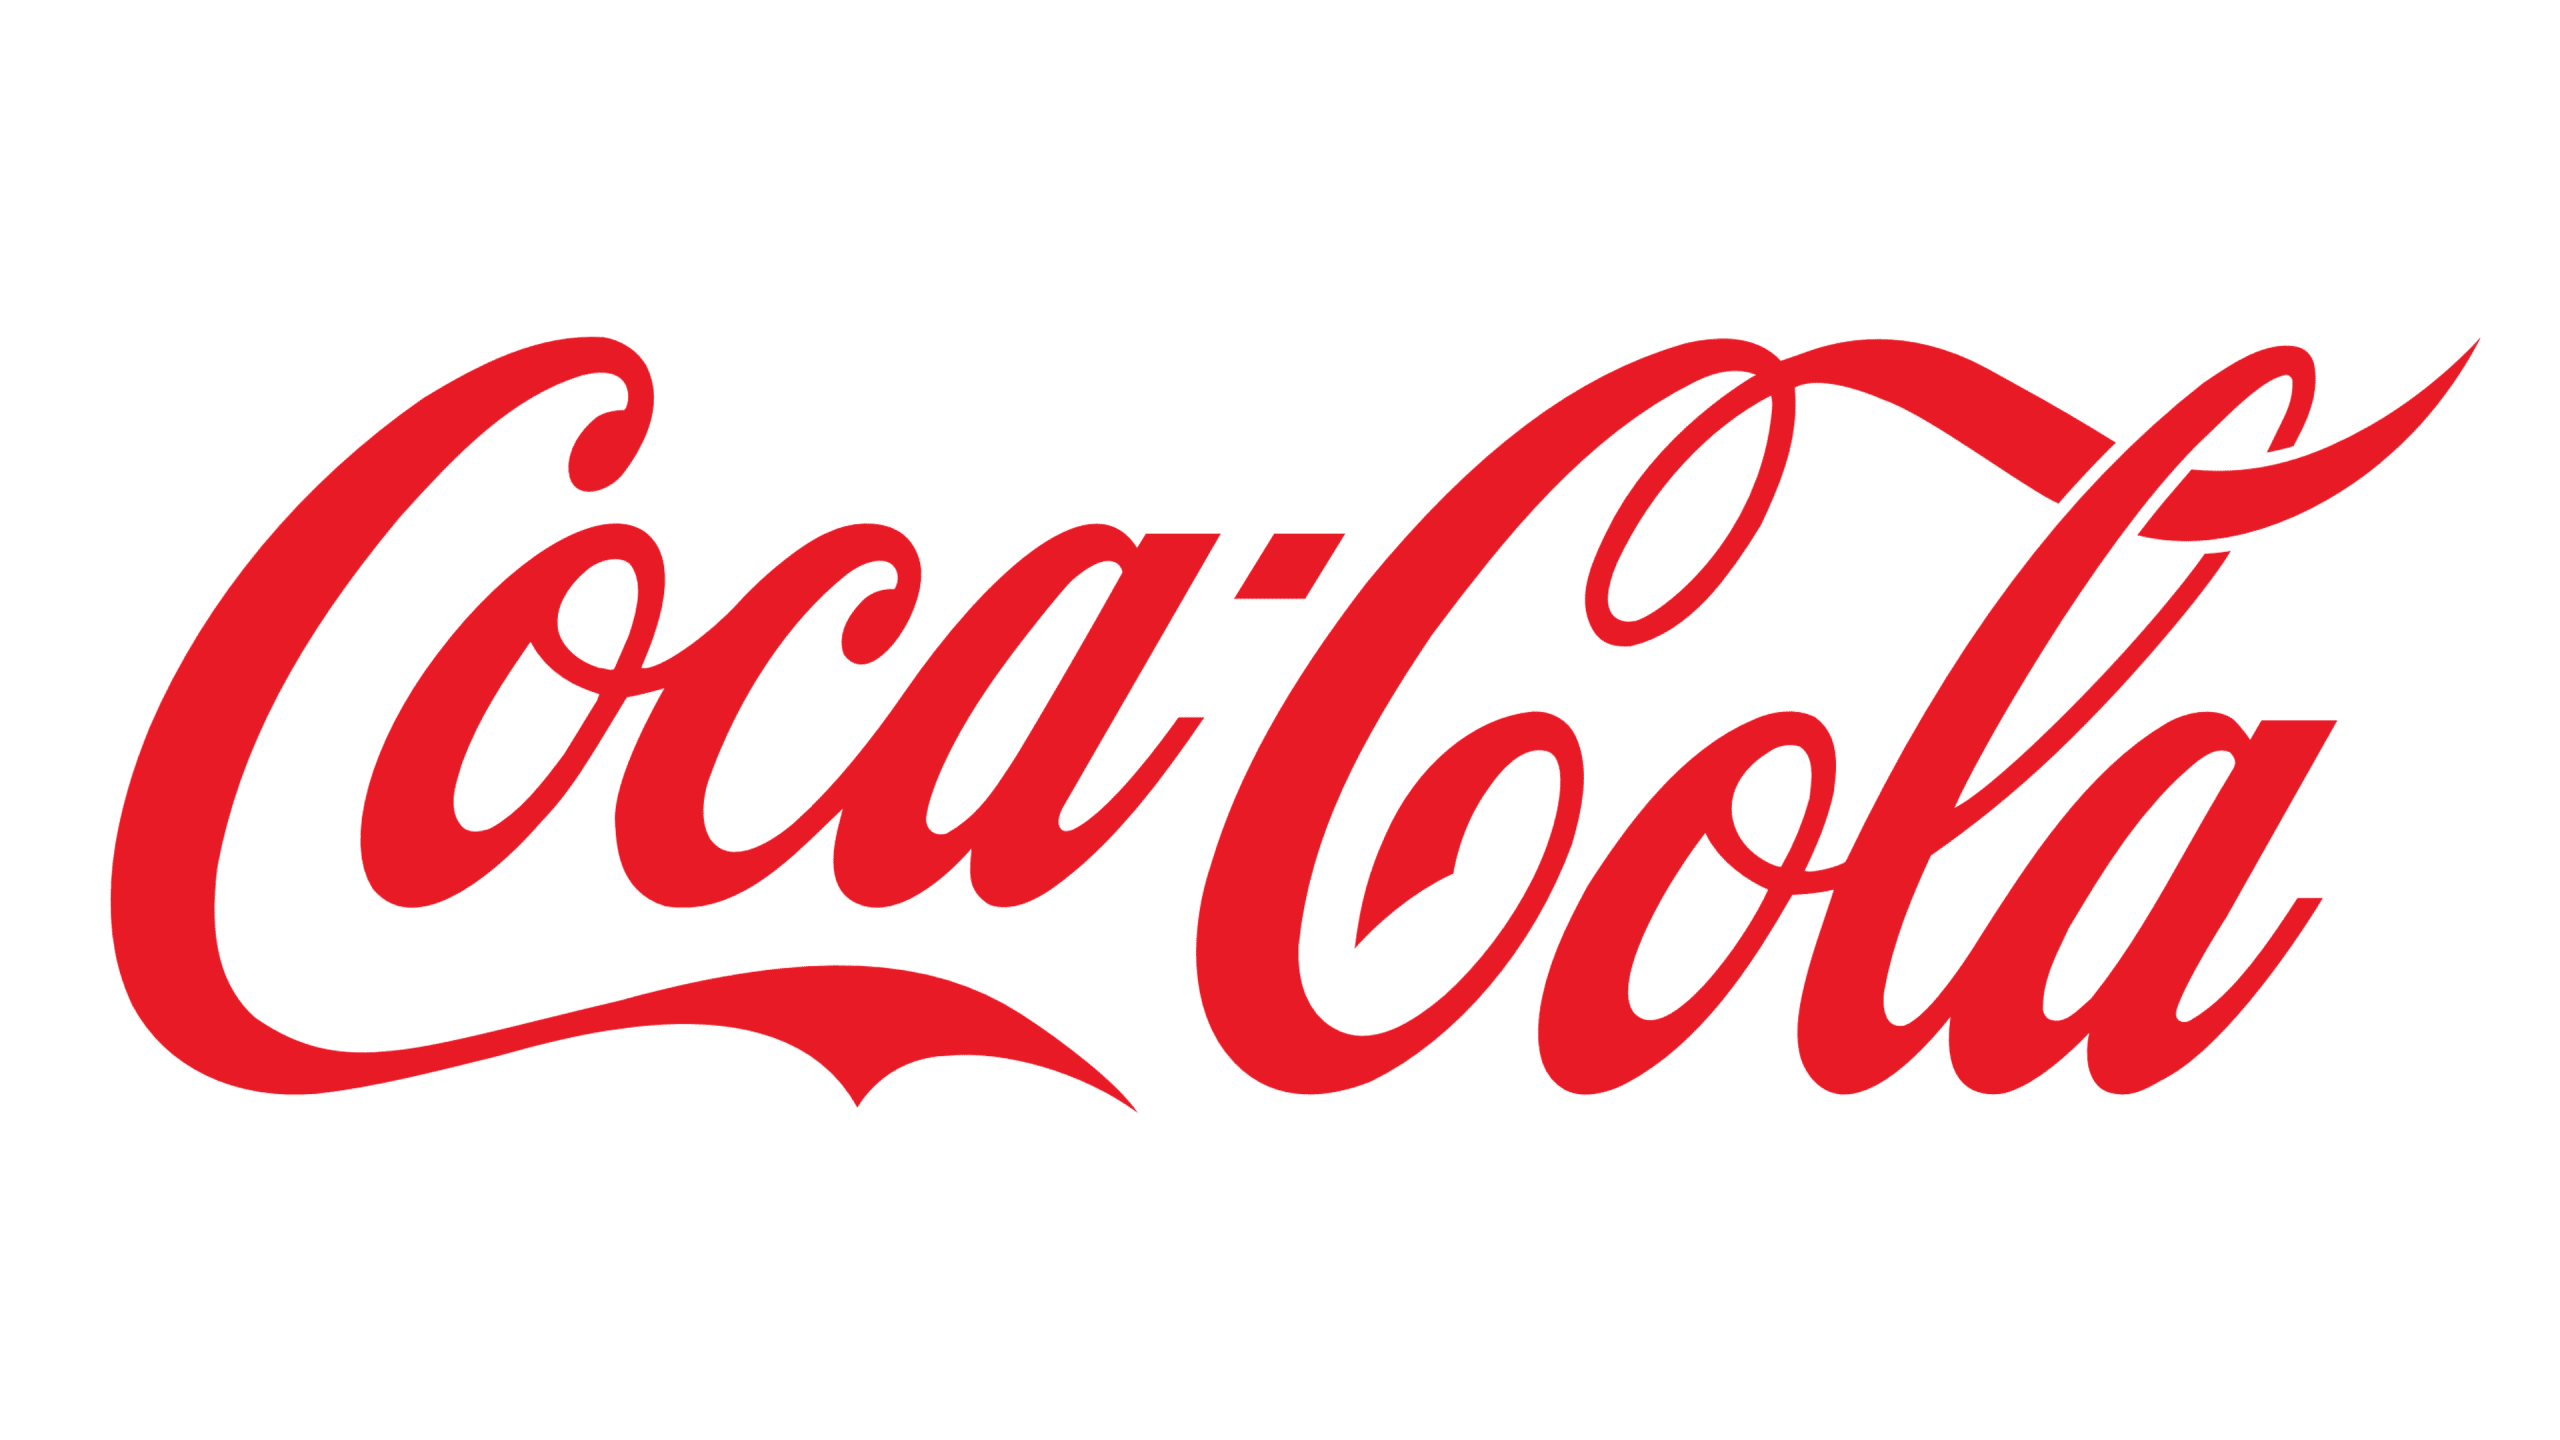 Coca Cola ESG score